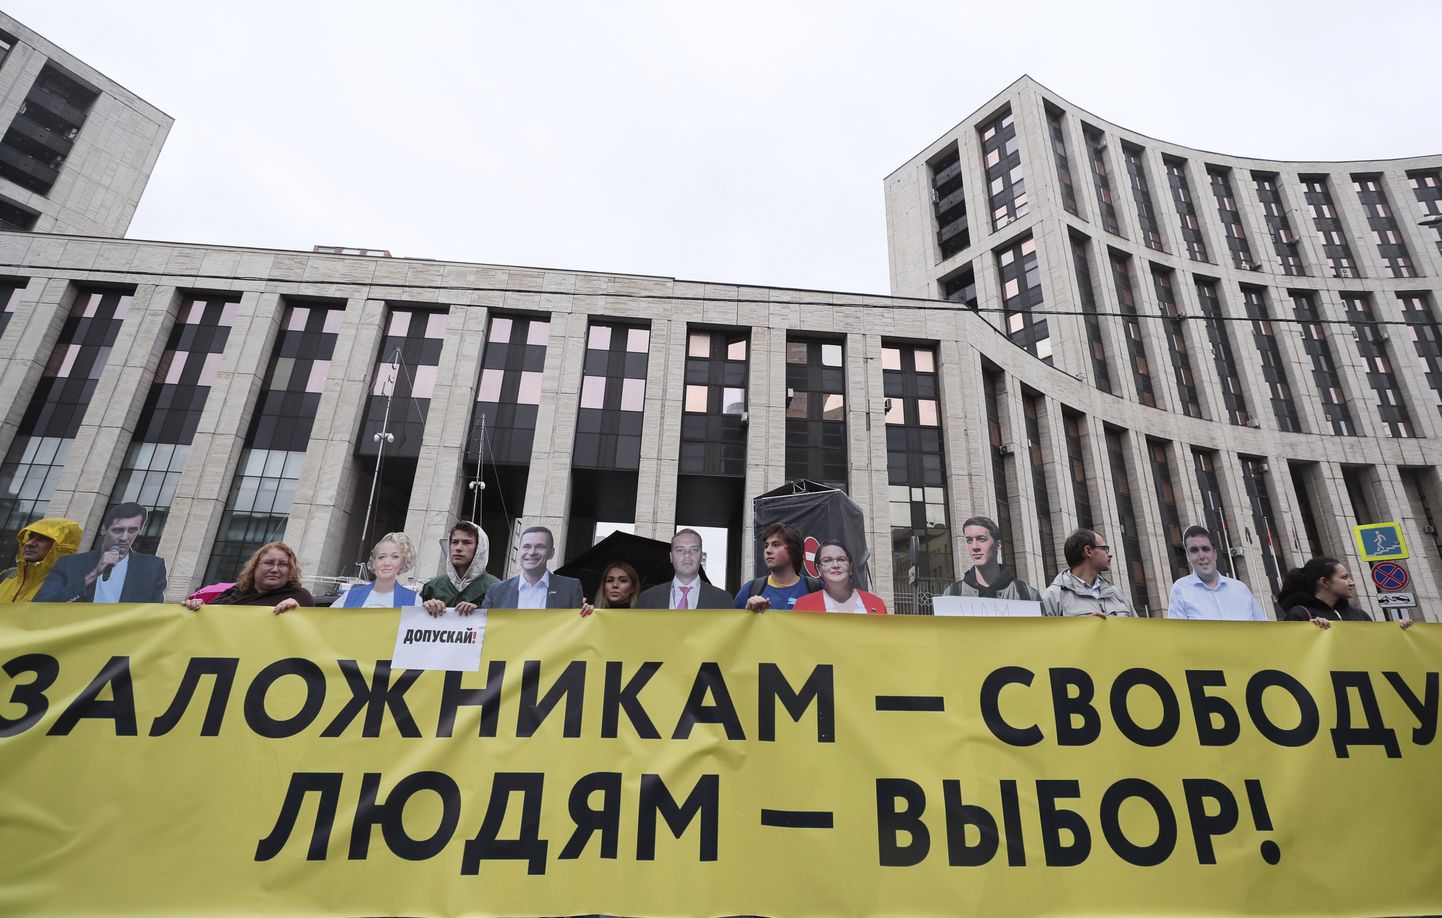 Protestētāji Maskavā 10. augustā, ar plakātu "Ķīlniekiem - brīvību, cilvēkiem - izvēli!"